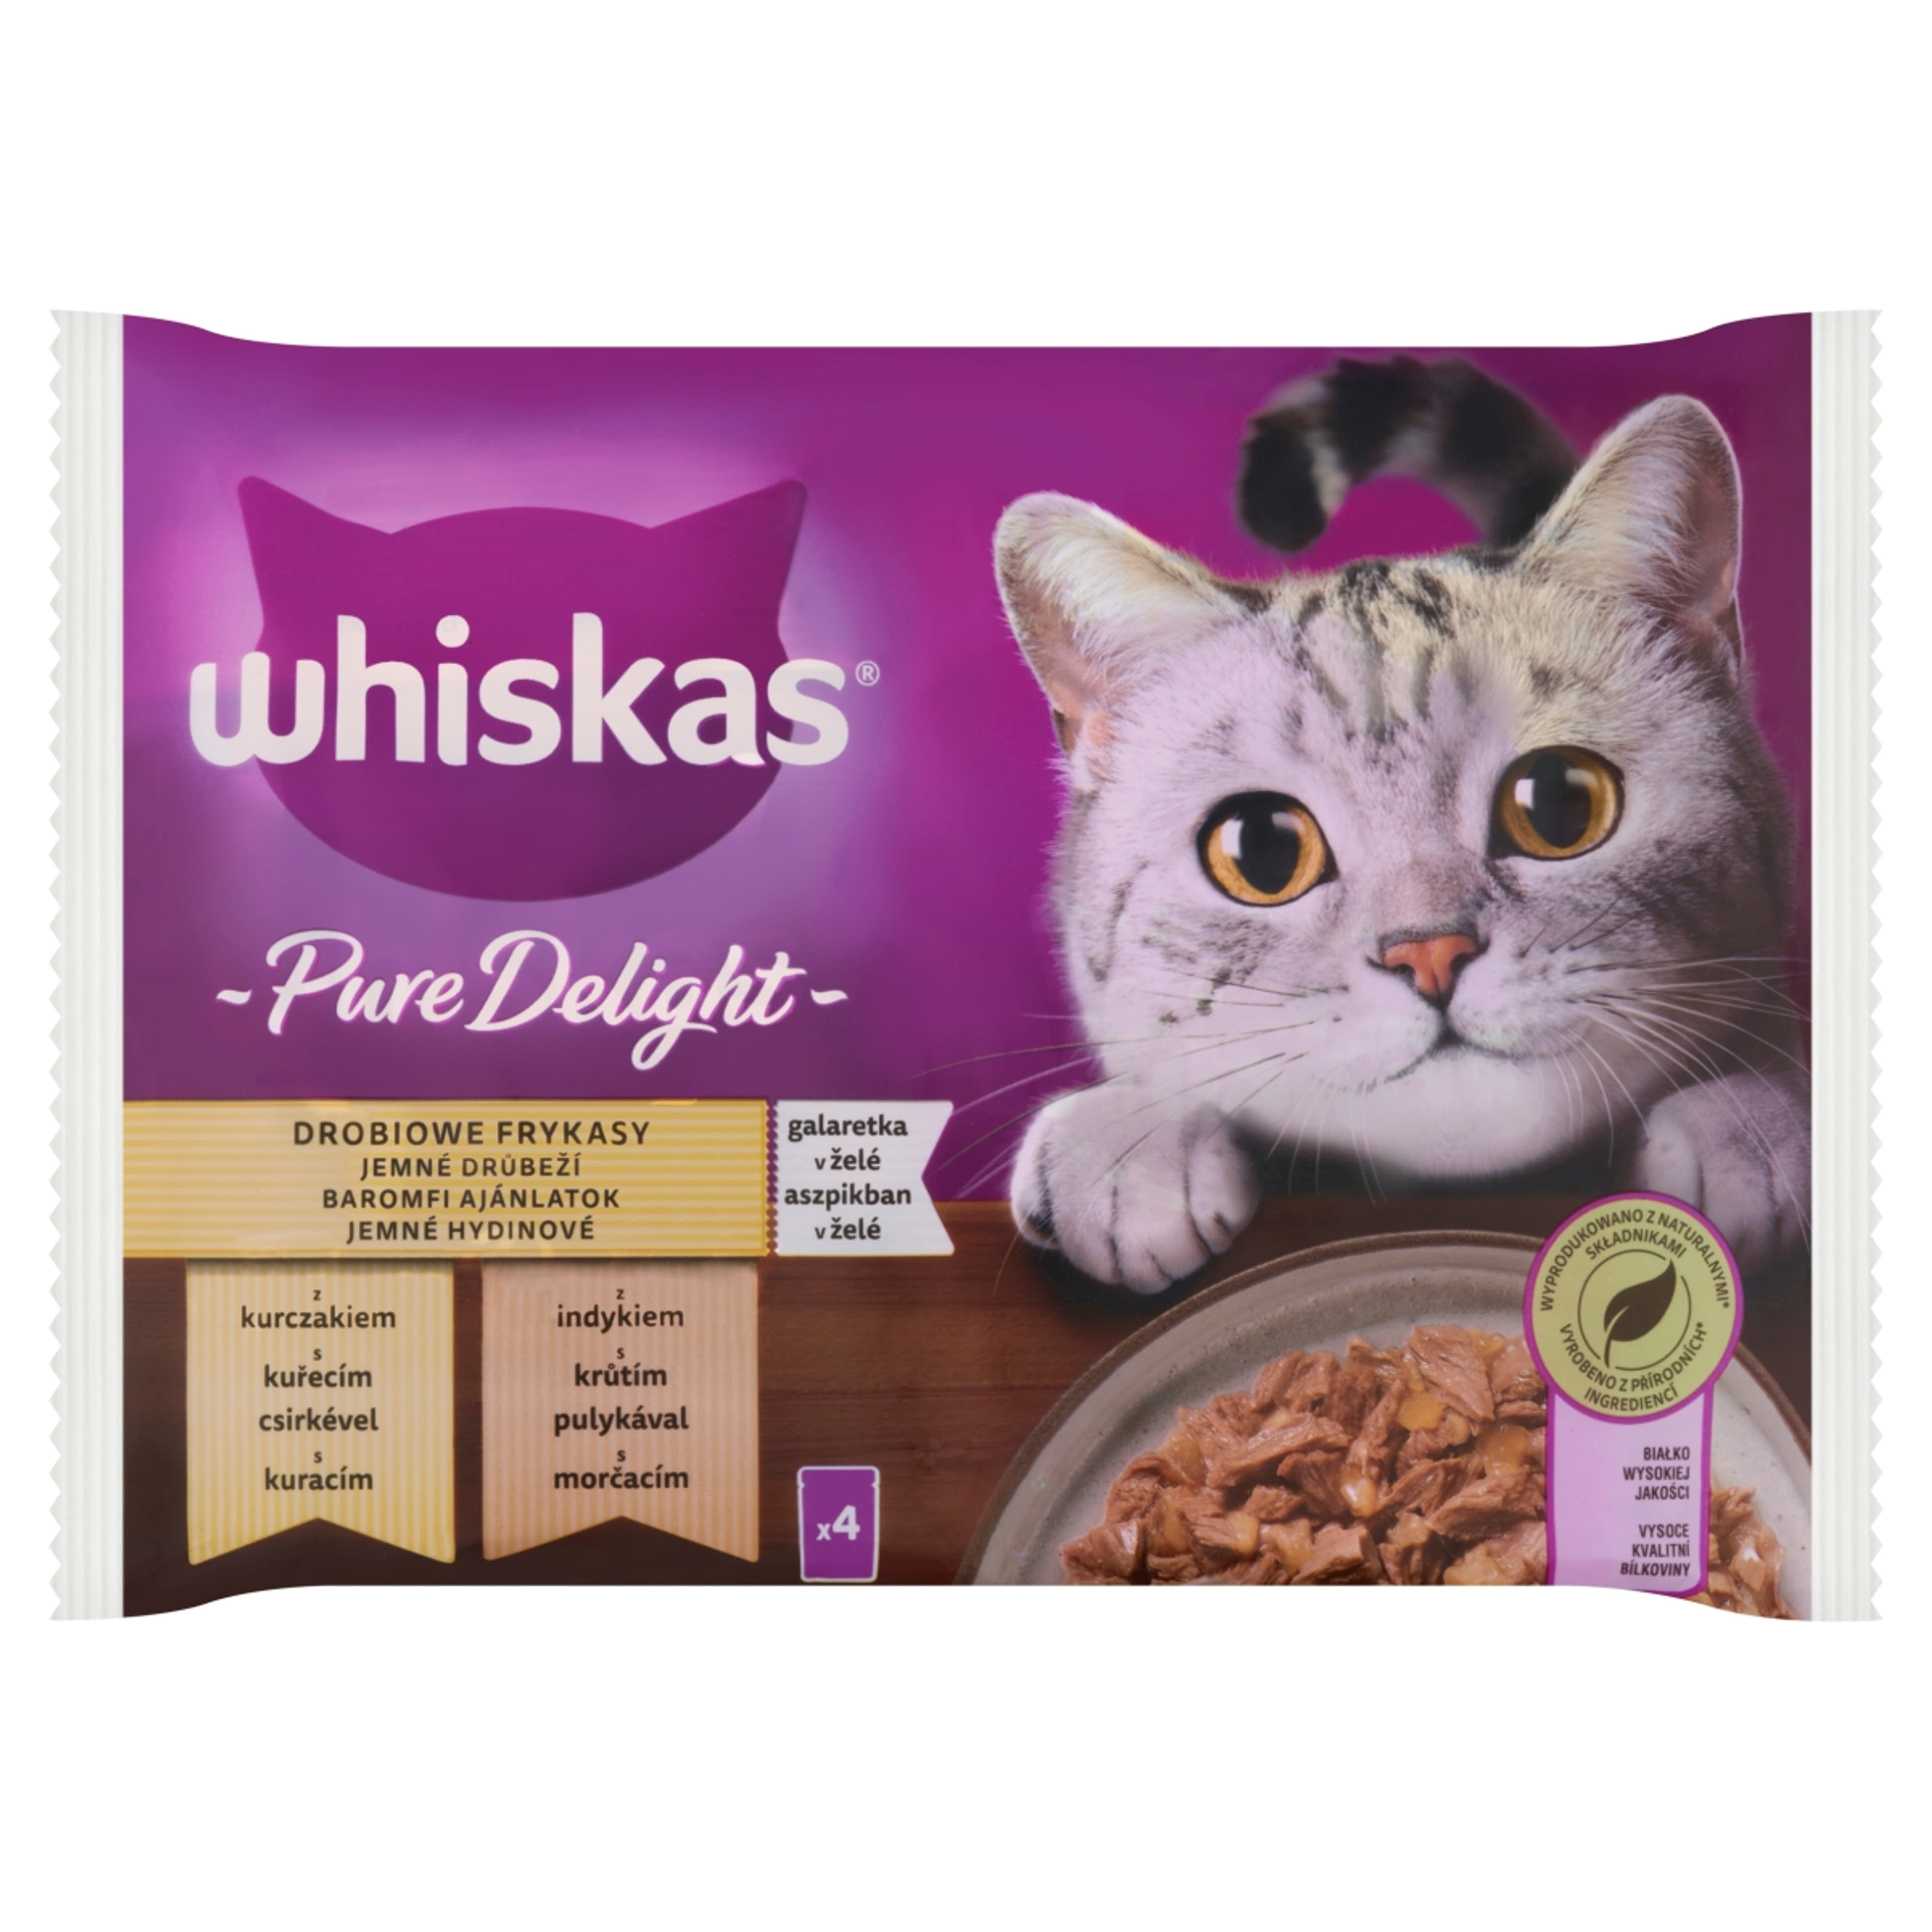 Whiskas Pure Delight alutasak felnőtt macskáknak 4 x 85 g - 340 g